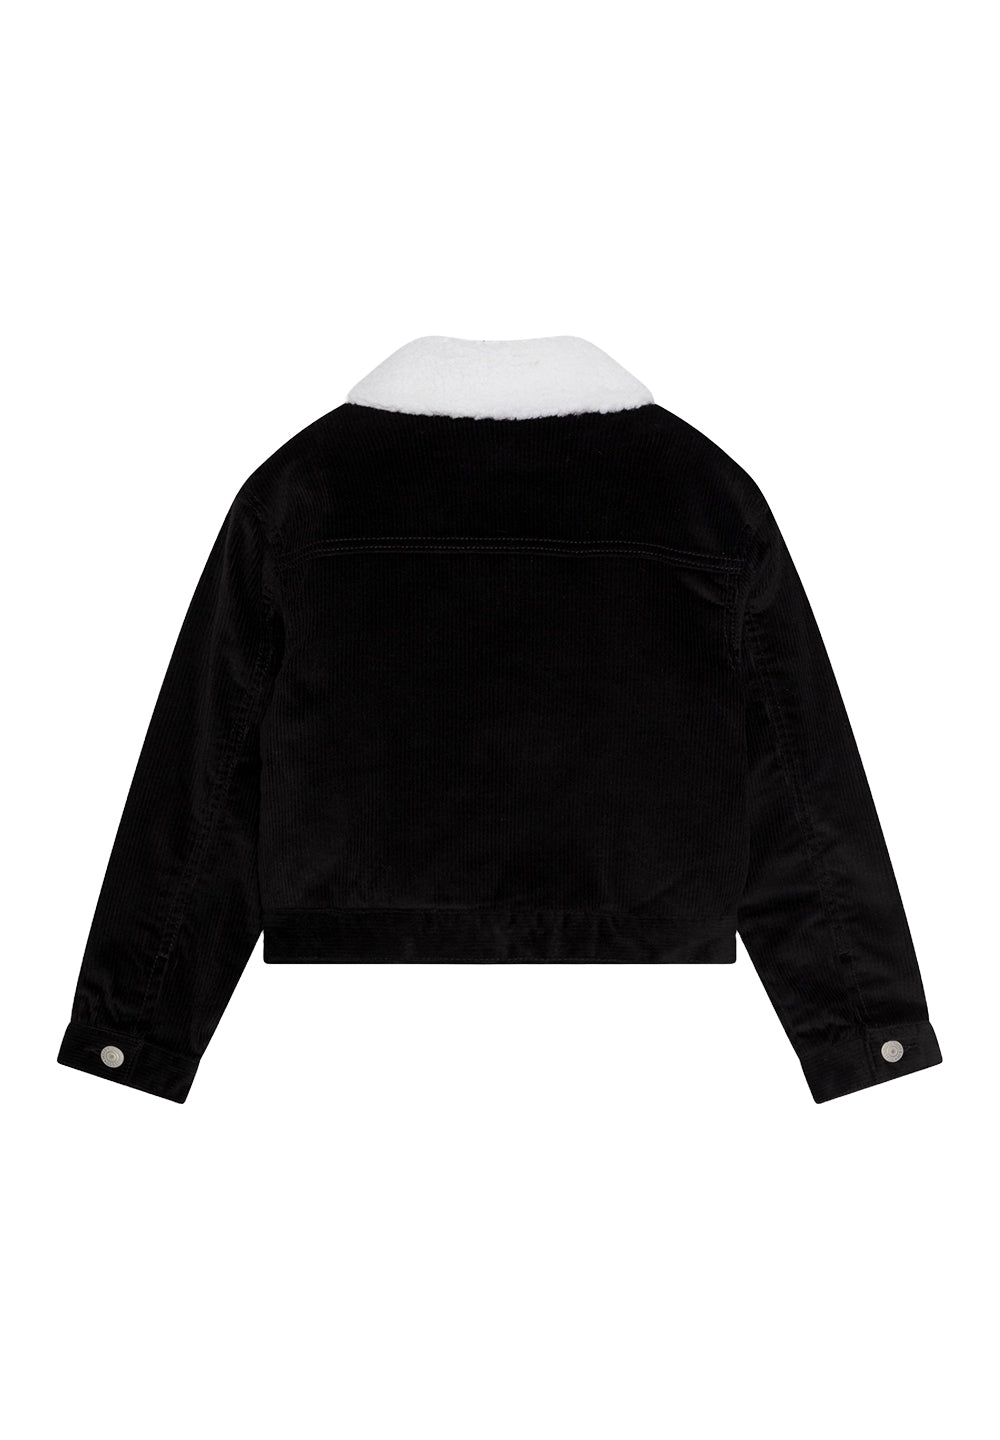 Black velvet jacket for girls